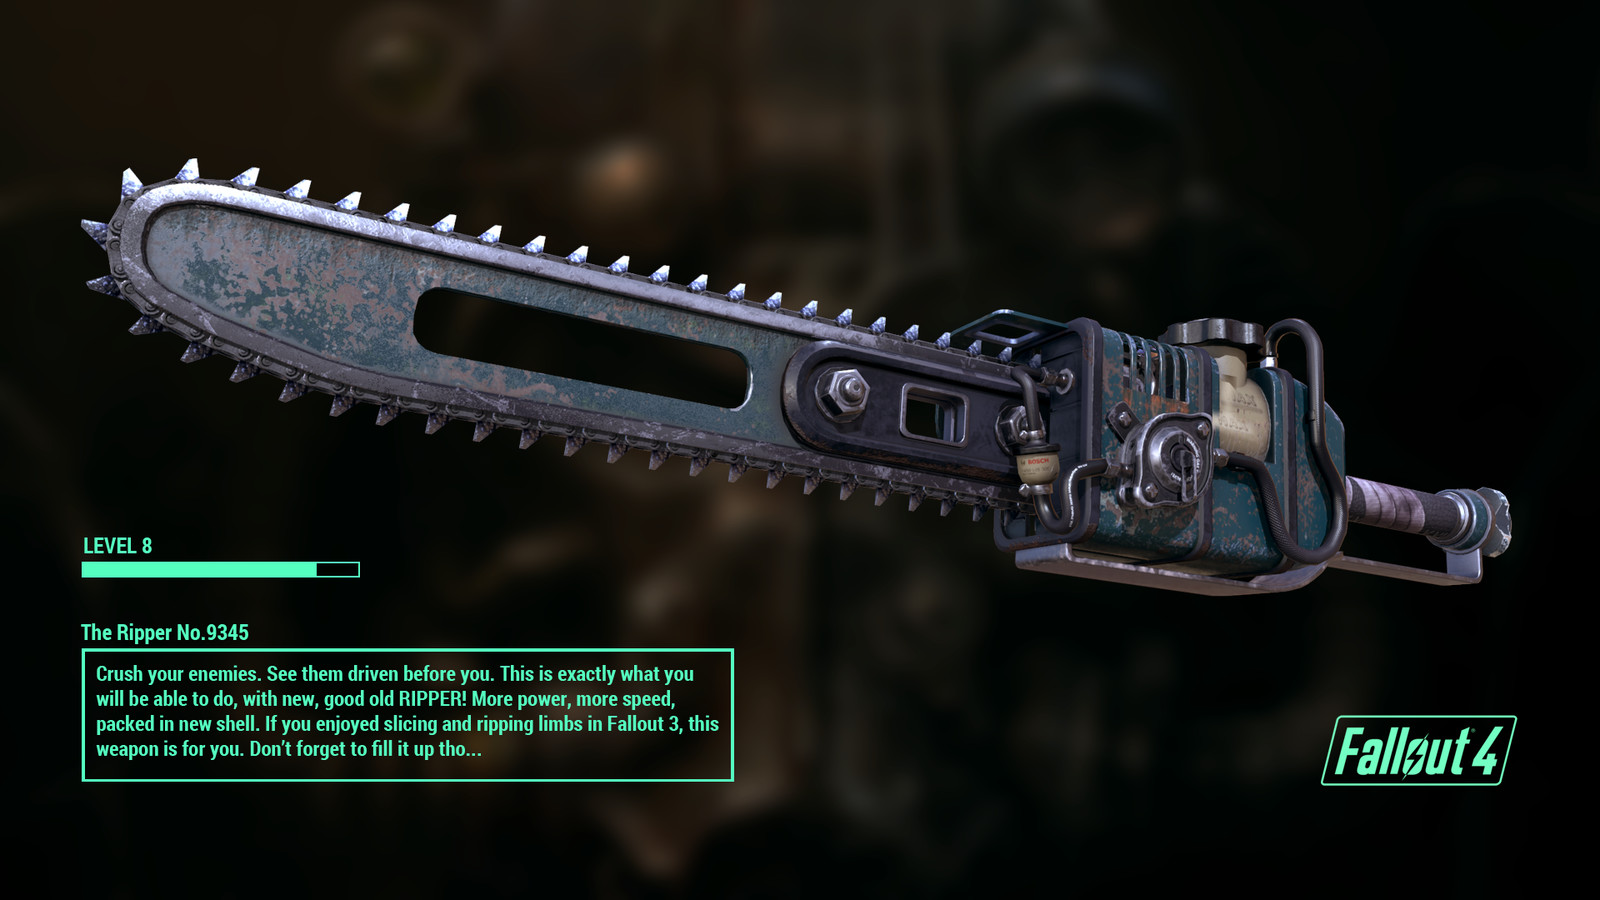 Fallout 4 принести меч абрахама финча фото 32